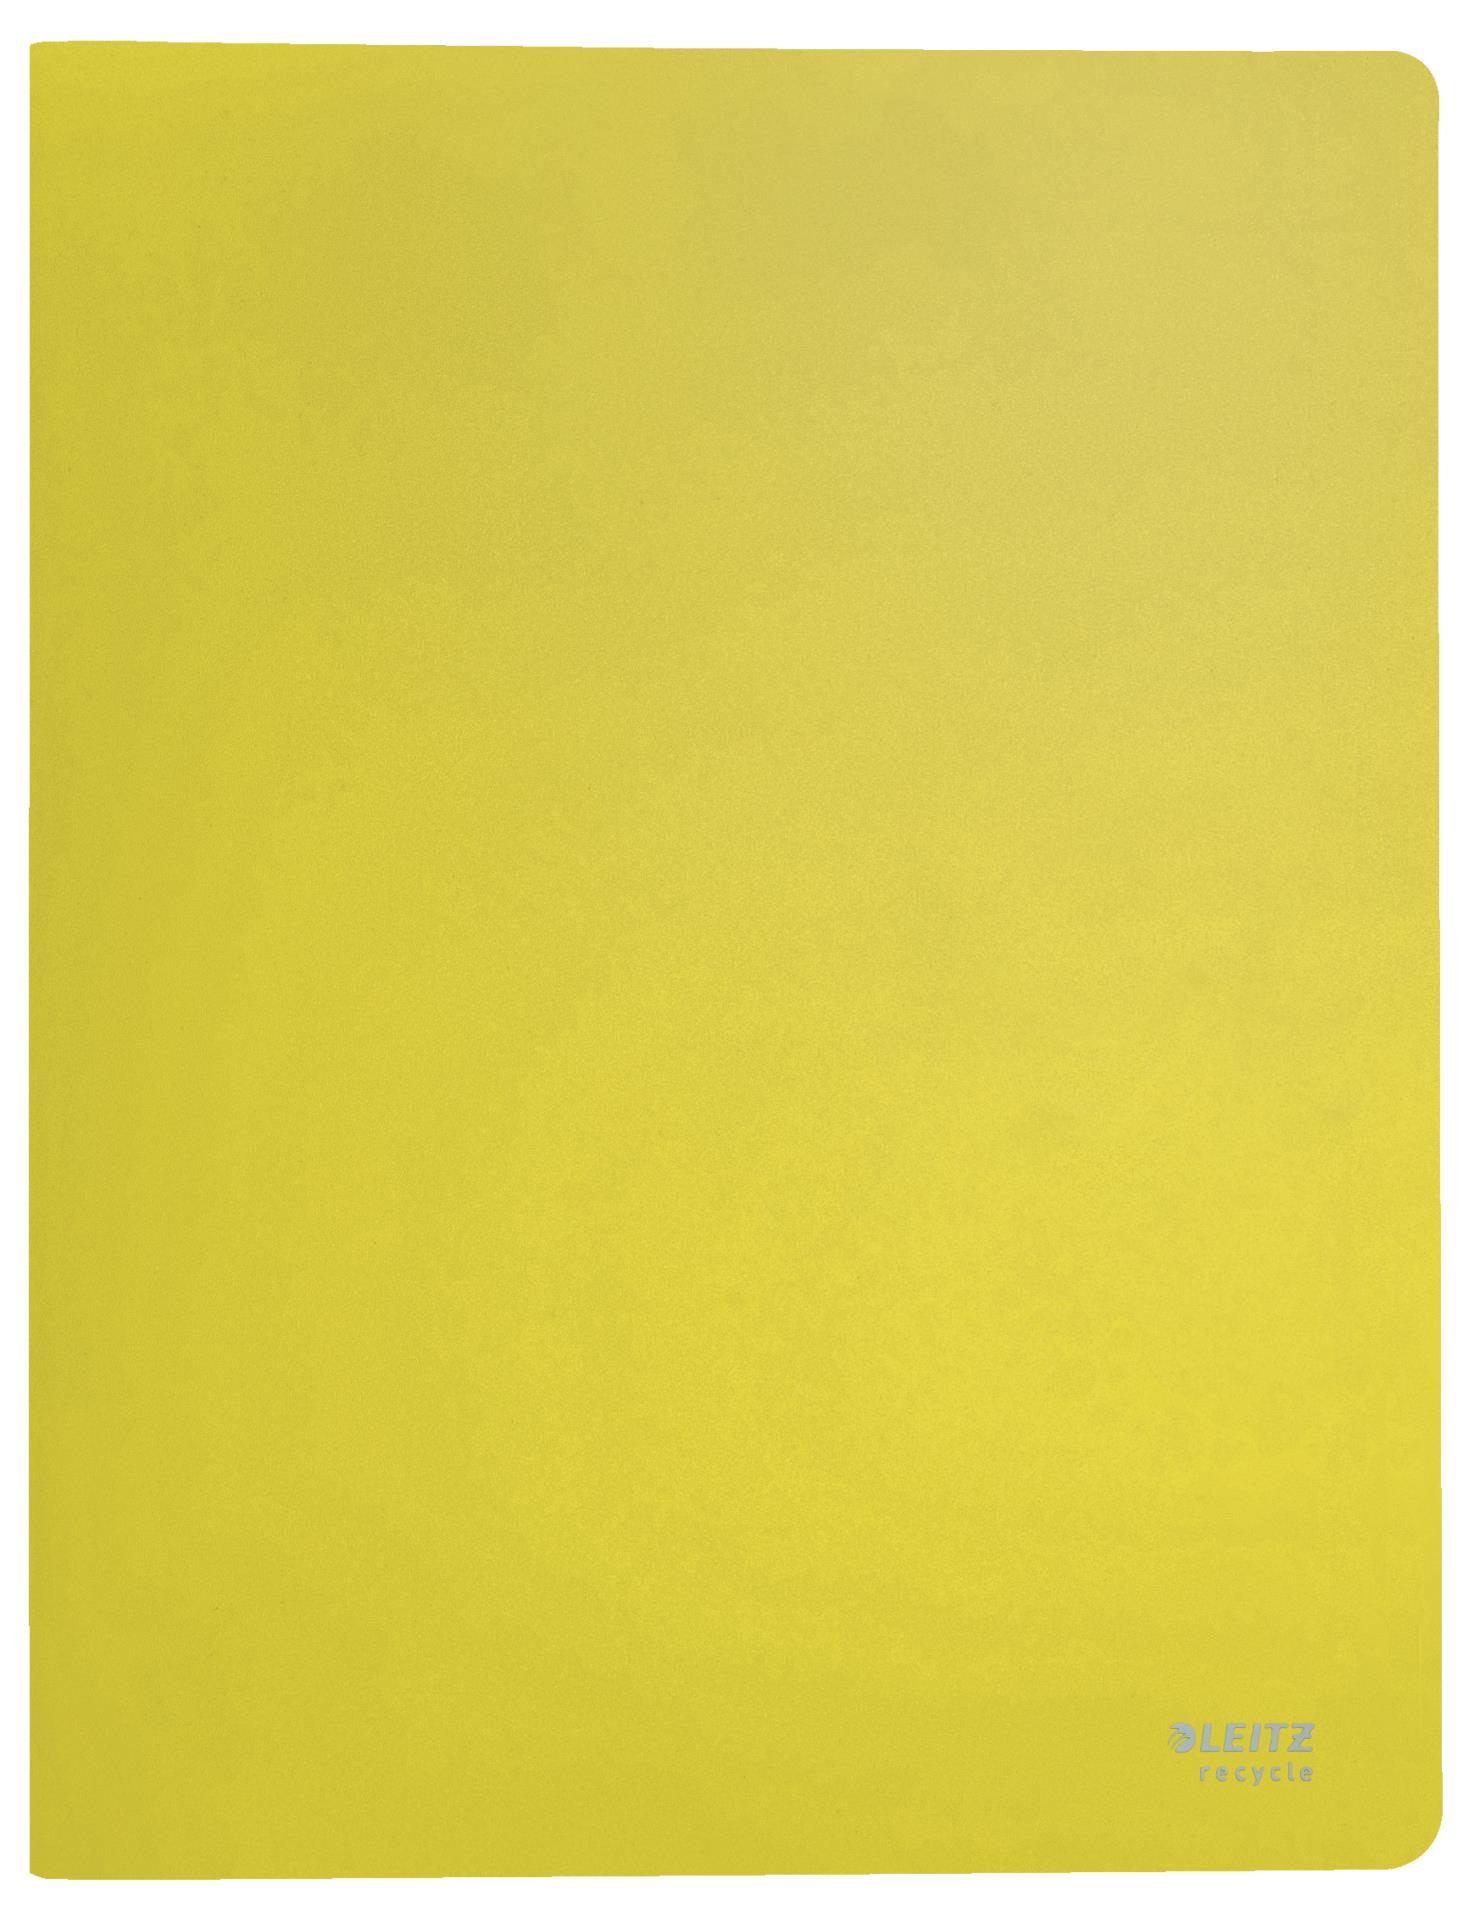 Katalogová kniha Leitz RECYCLE - A4, 40 kapes, ekologická, žlutá